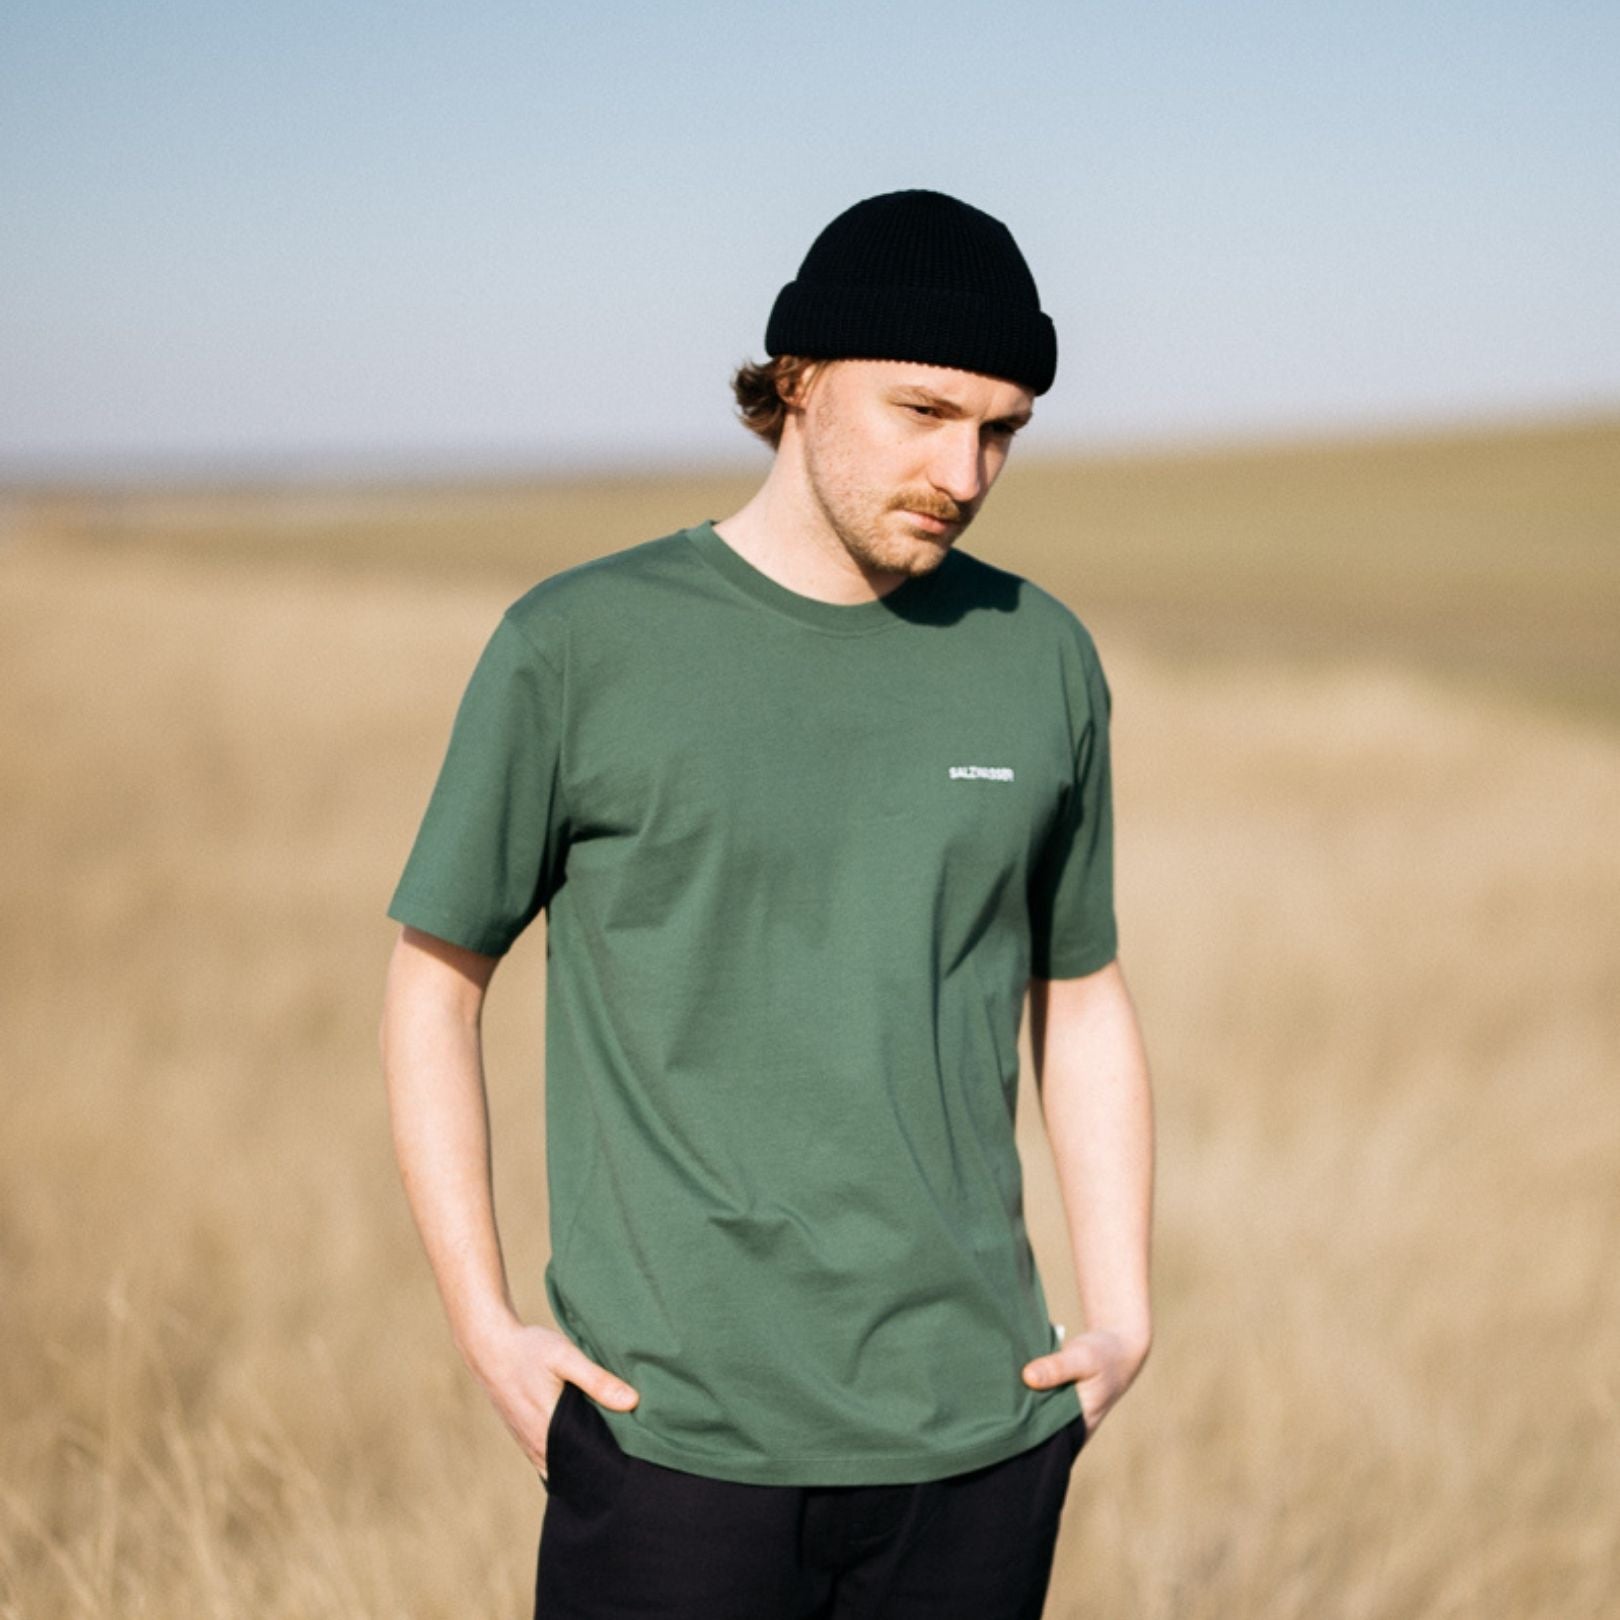 Nachhaltiges grünes T-Shirt aus Bio-Baumwolle fair hergestellt in Portugal als leichtes Outfit 2022